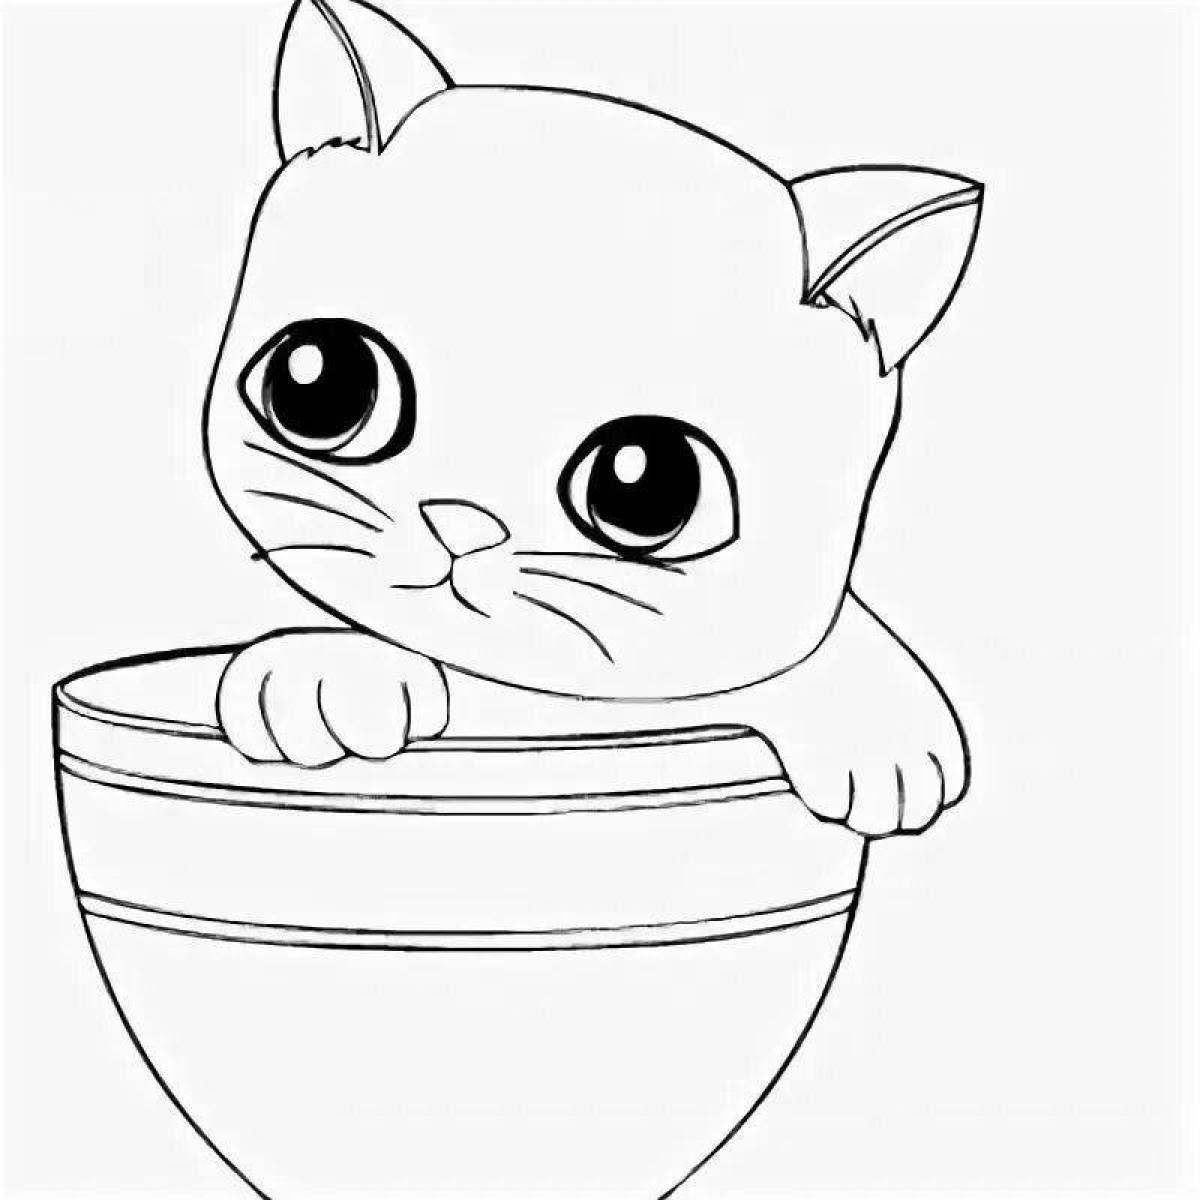 Cute cat in a mug coloring book